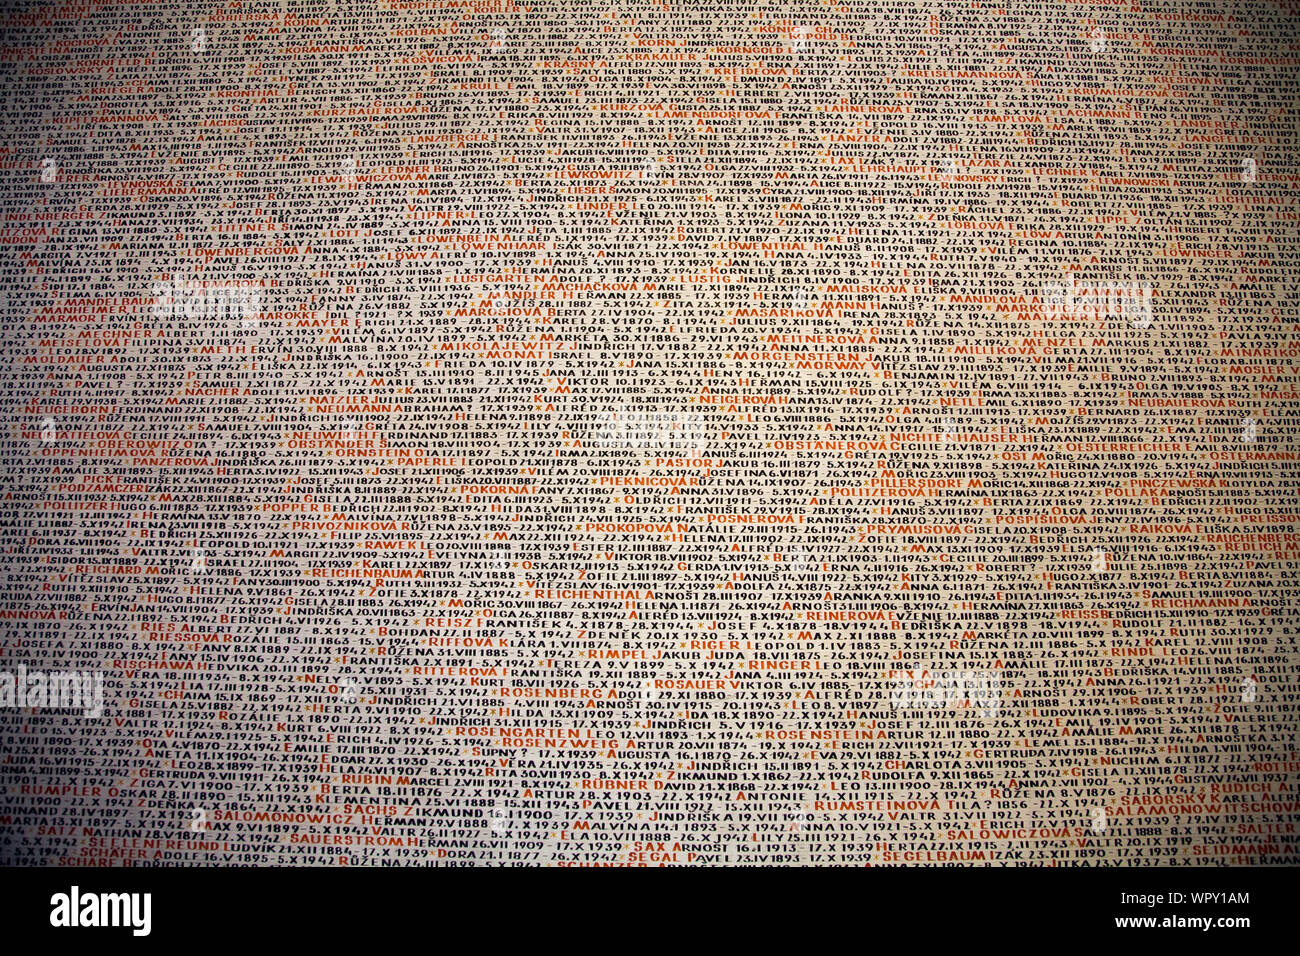 La pared interior de la Sinagoga Pinkas Checa mostrando los nombres de víctimas del holocausto judío. Praga, República Checa. Foto de stock